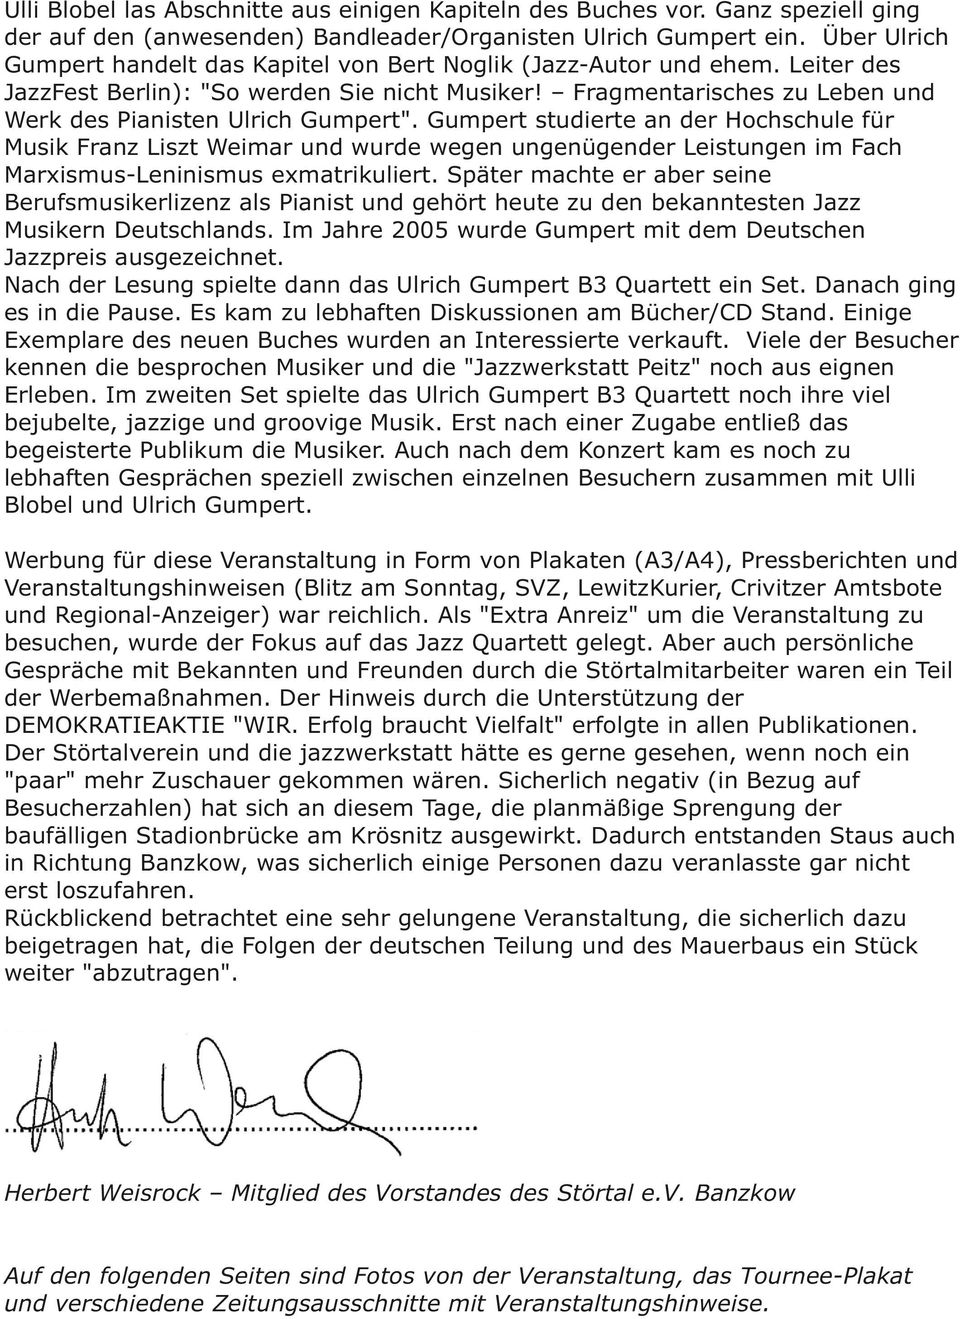 Fragmentarisches zu Leben und Werk des Pianisten Ulrich Gumpert".